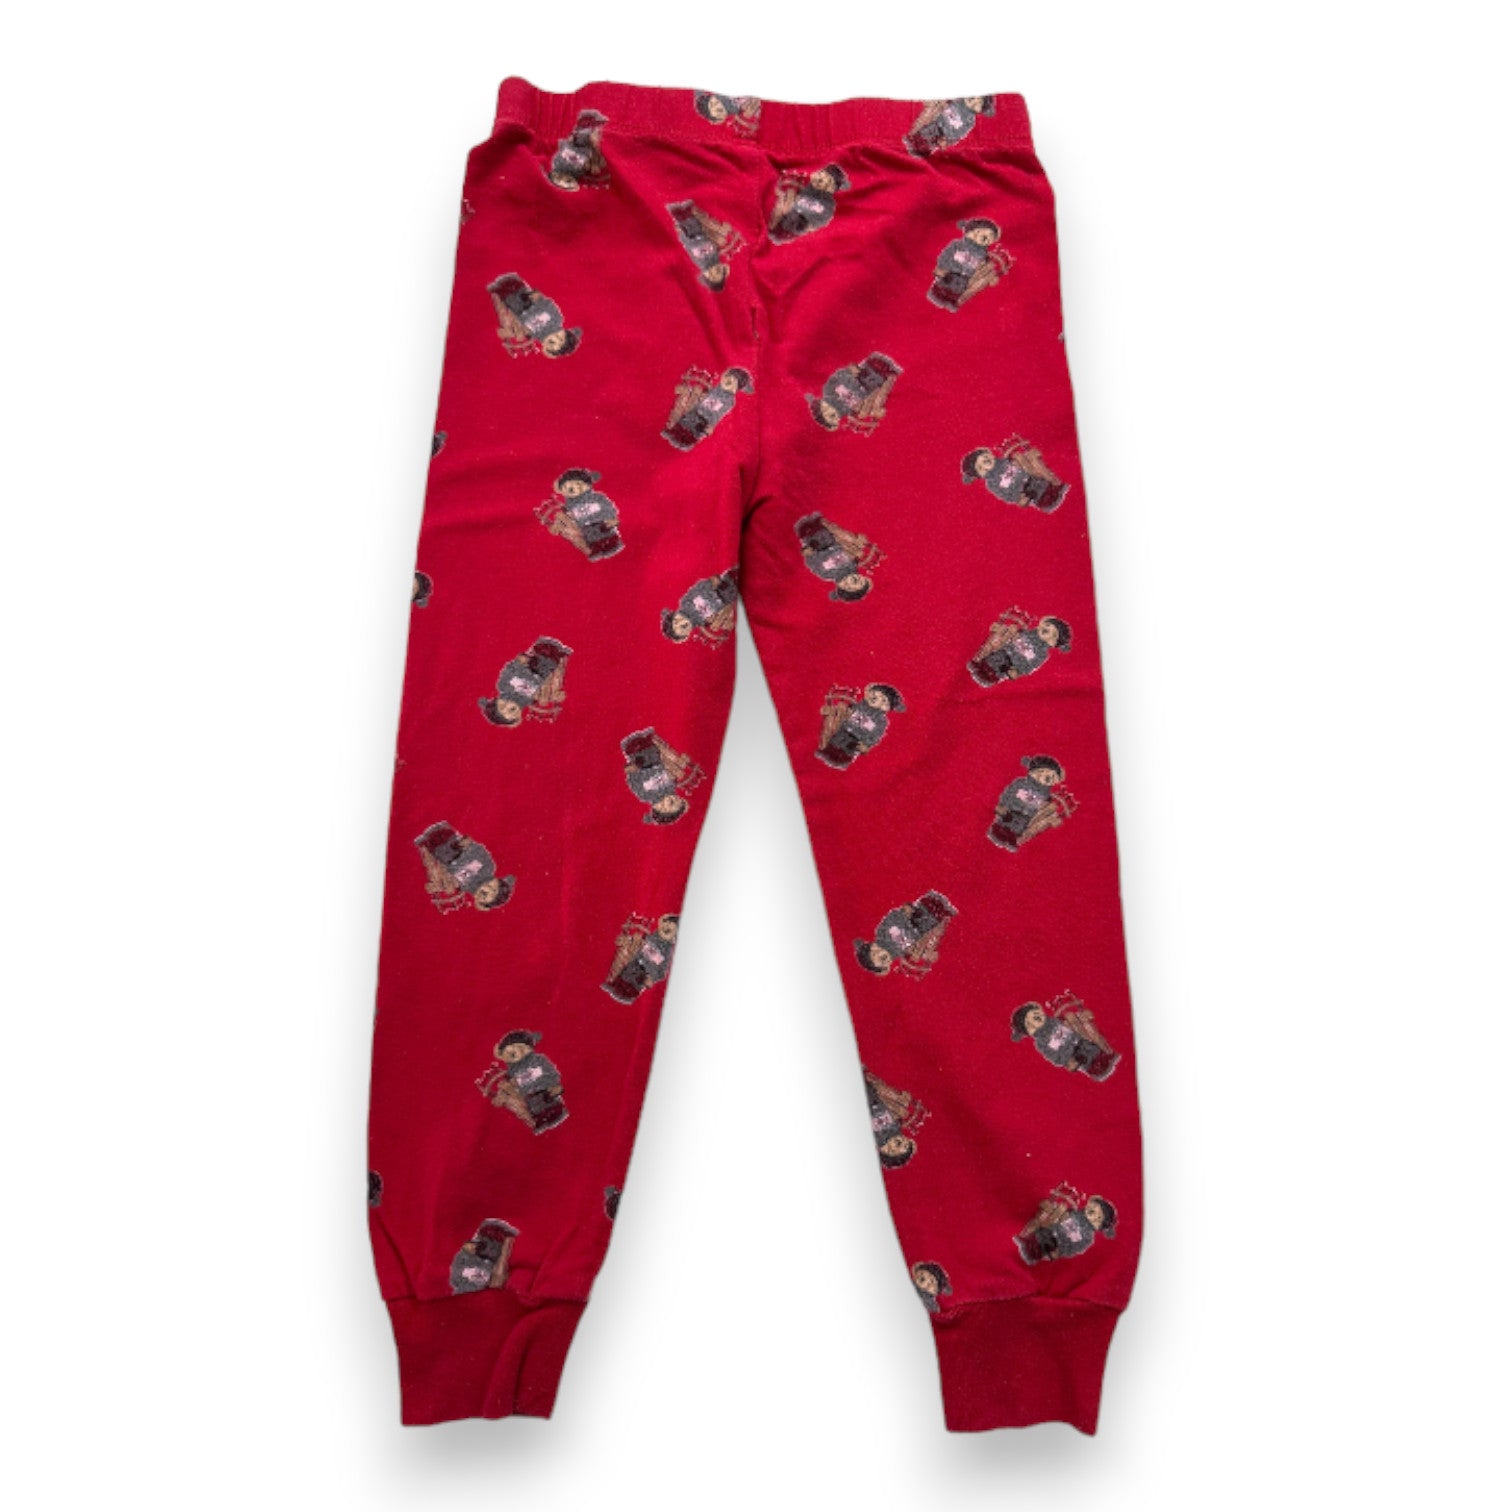 RALPH LAUREN - Bas de pyjama rouge avec imprimés oursons - 3 ans